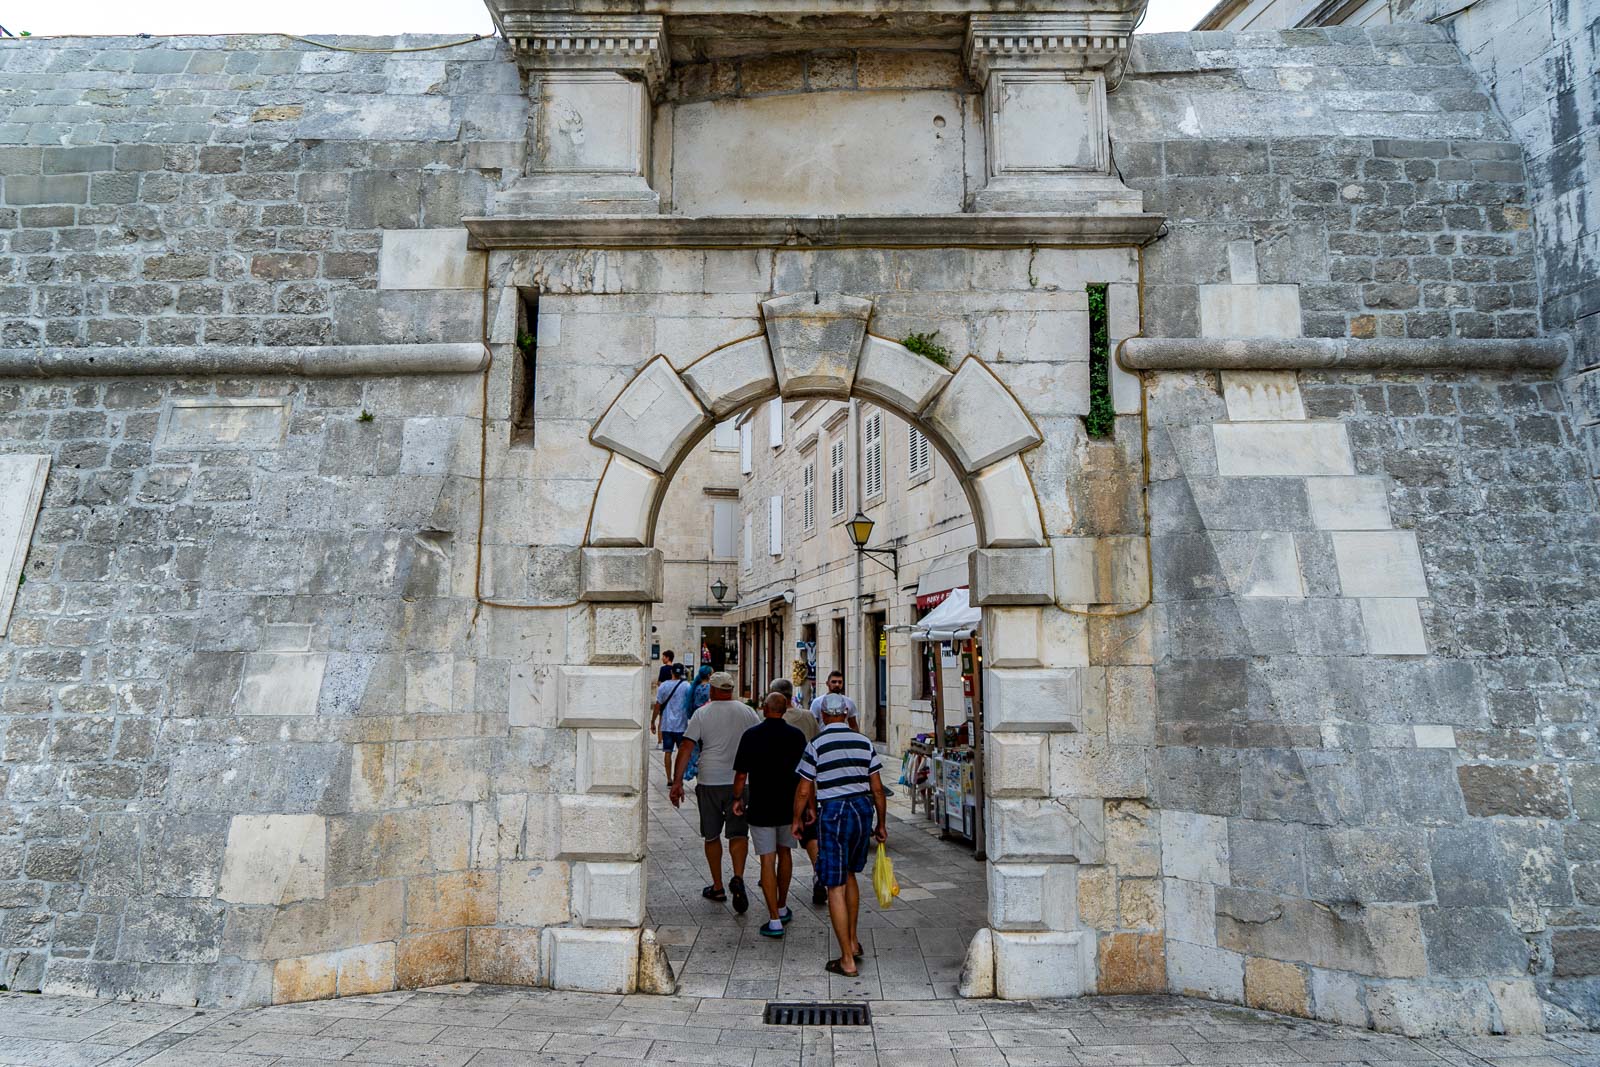 North Gate, Trogir